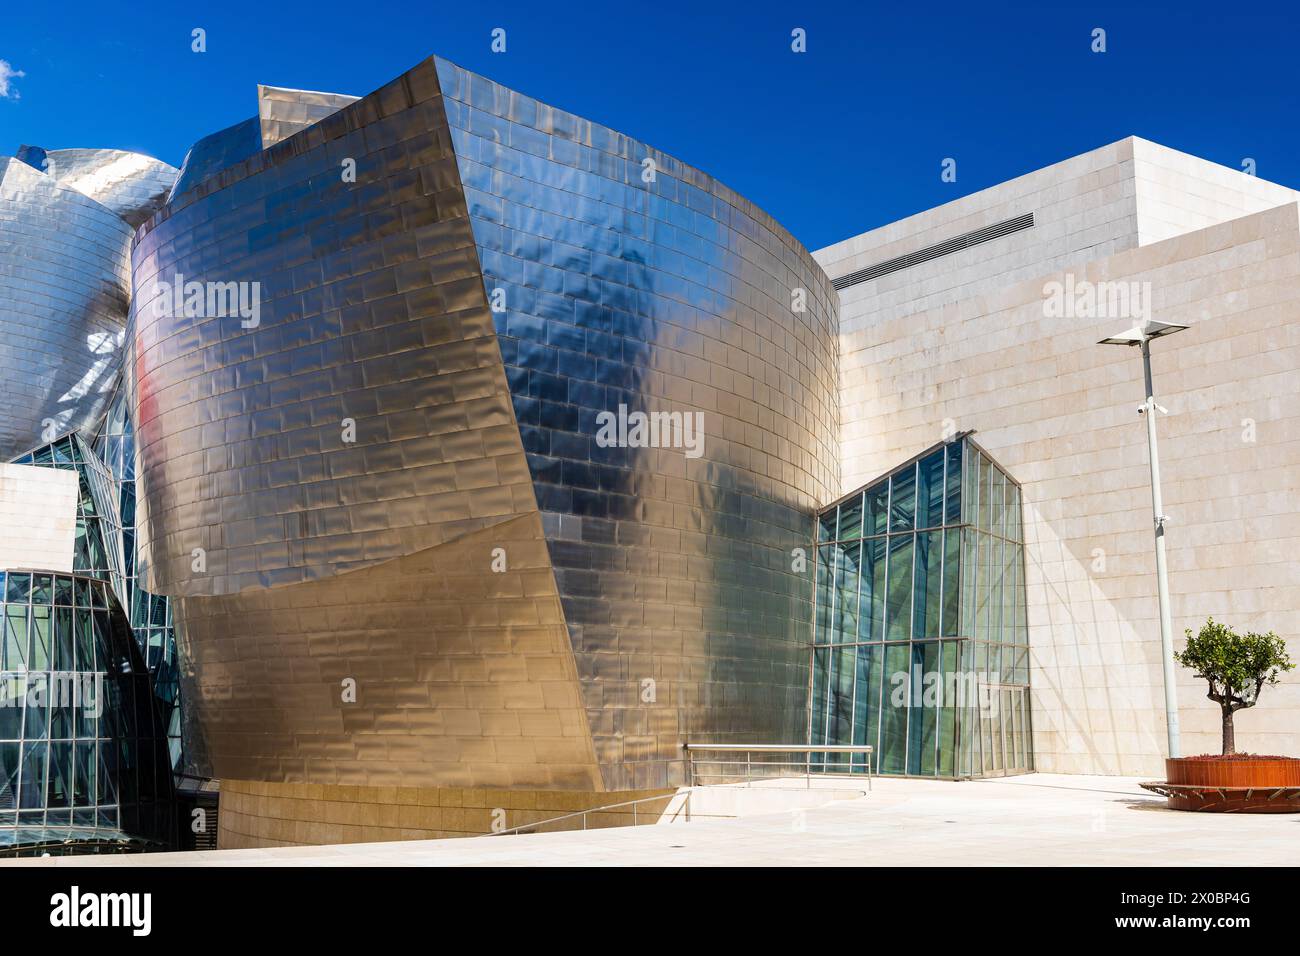 L'extérieur du musée Guggenheim, avec une architecture avant-gardiste caractérisée par des courbes fluides et des surfaces métalliques lisses. Bilbao, Espagne. Banque D'Images